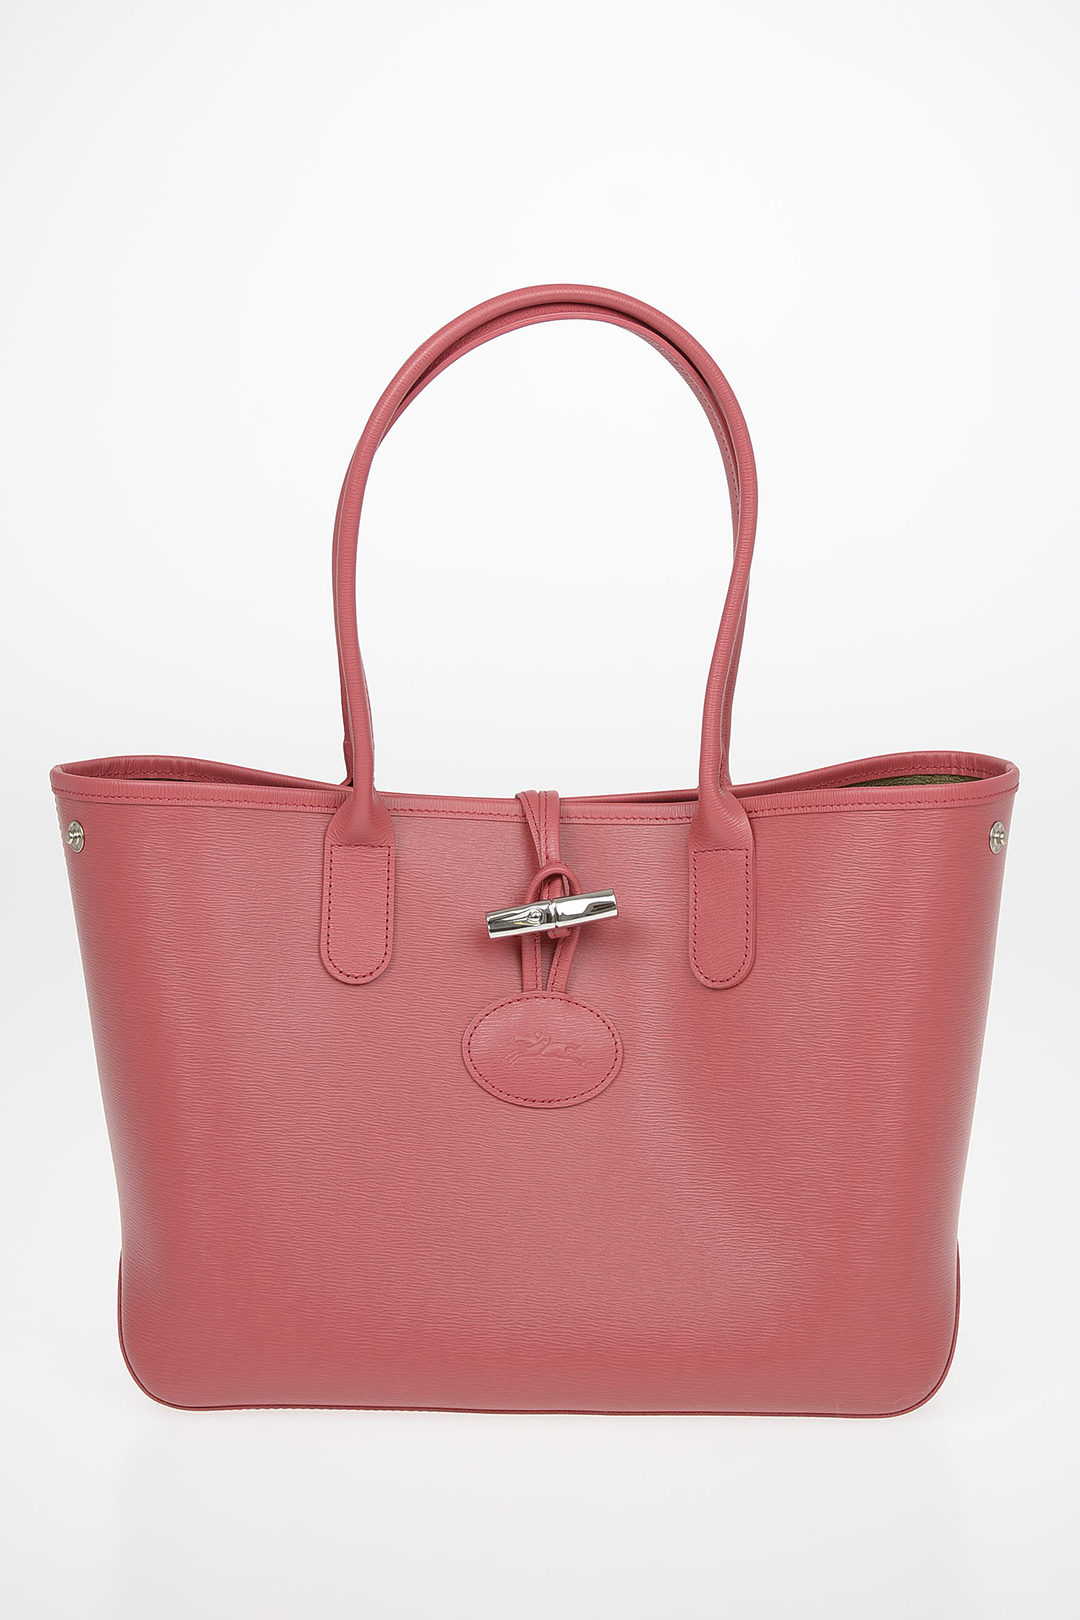 Longchamp 'Roseau' Shopping Bag